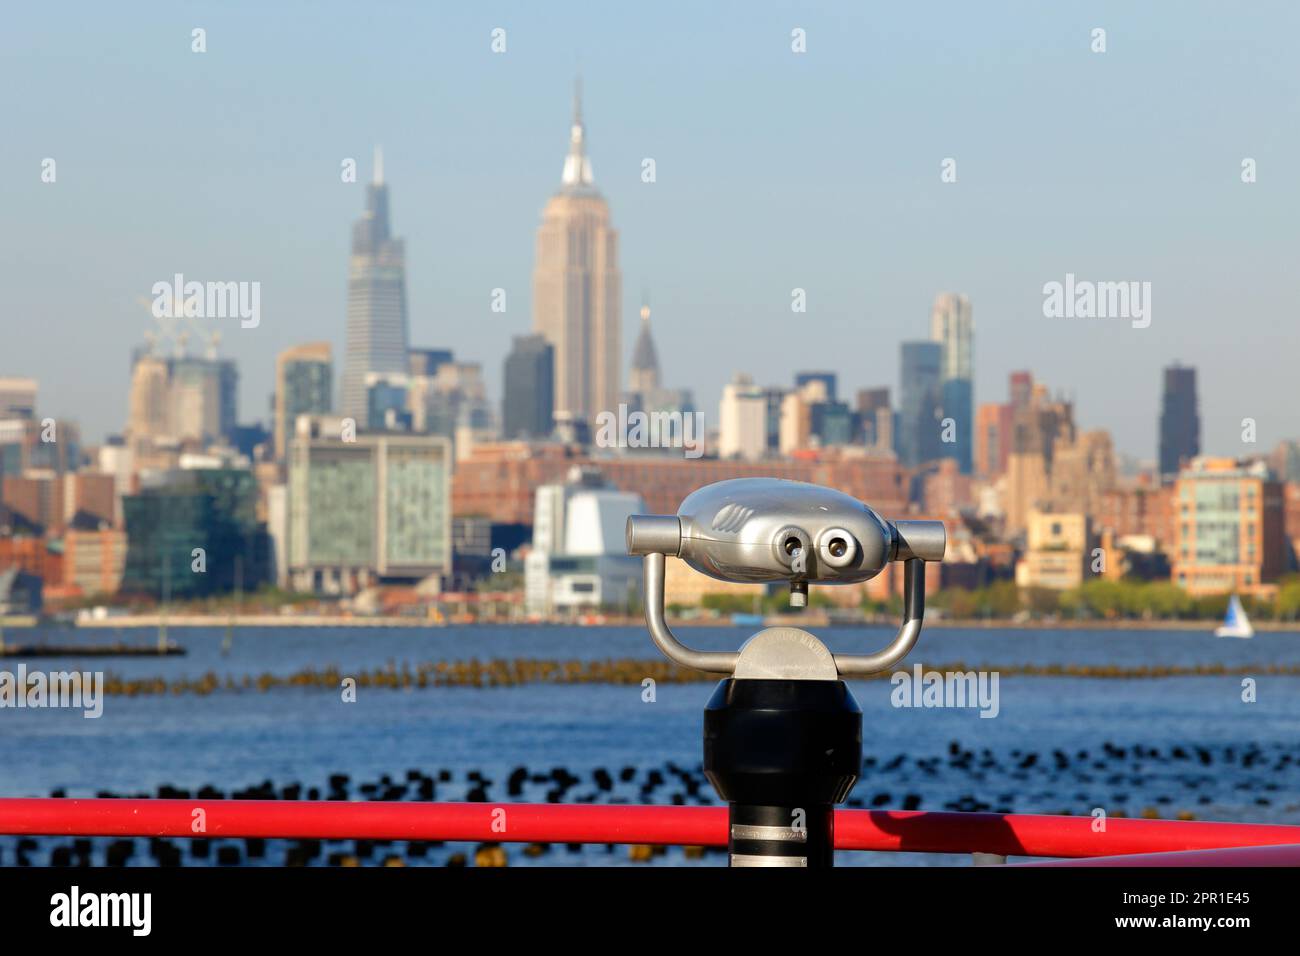 Jumelles Hi Spy orientées vers les gratte-ciel de New York avec l'Empire State Building dans Midtown Manhattan en son centre. Banque D'Images